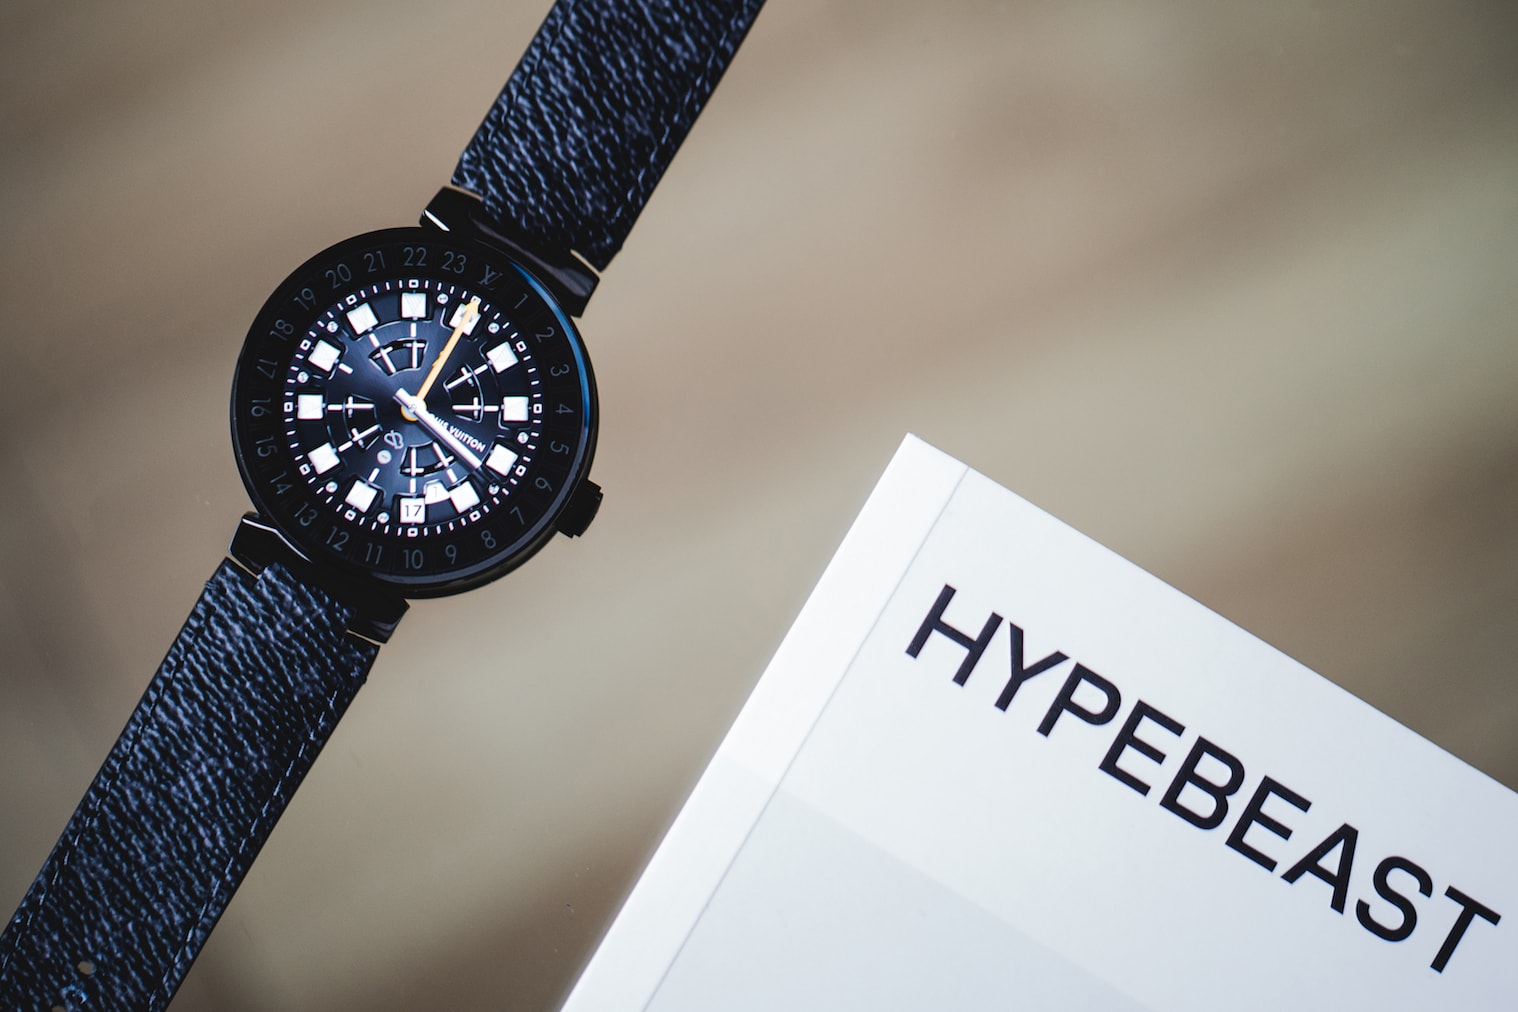 Louis Vuitton 為智能手錶 Tambour Horizon 推出全新 CNY 錶盤設計